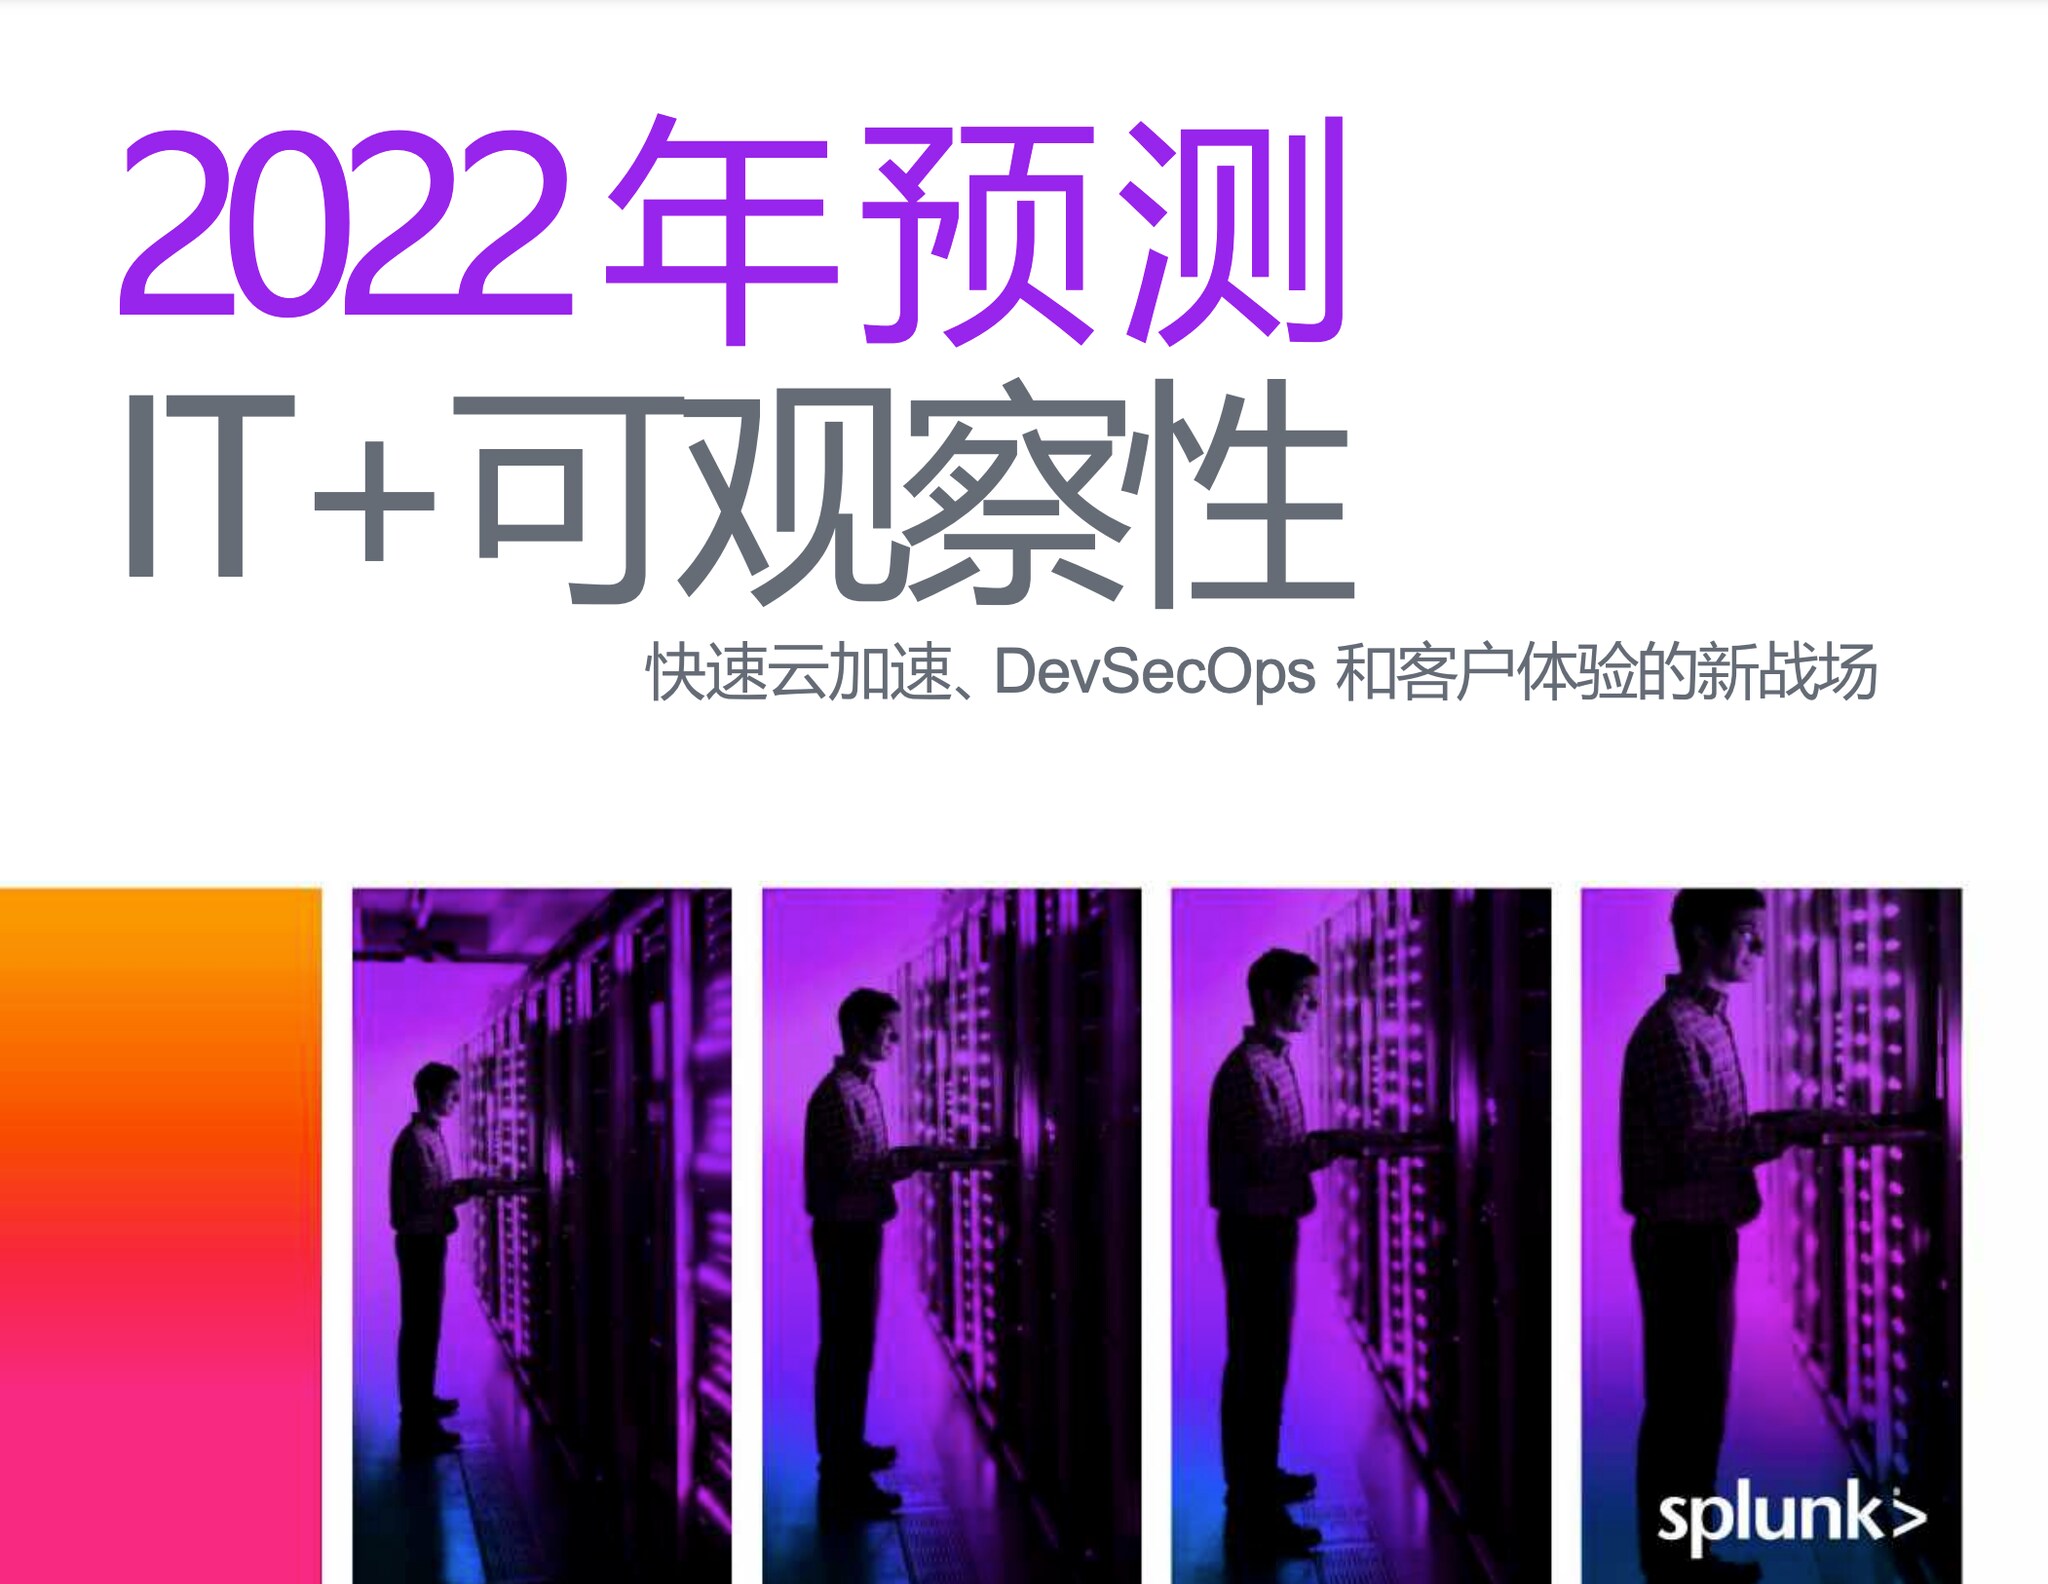 Splunk IT 运营预测 2022